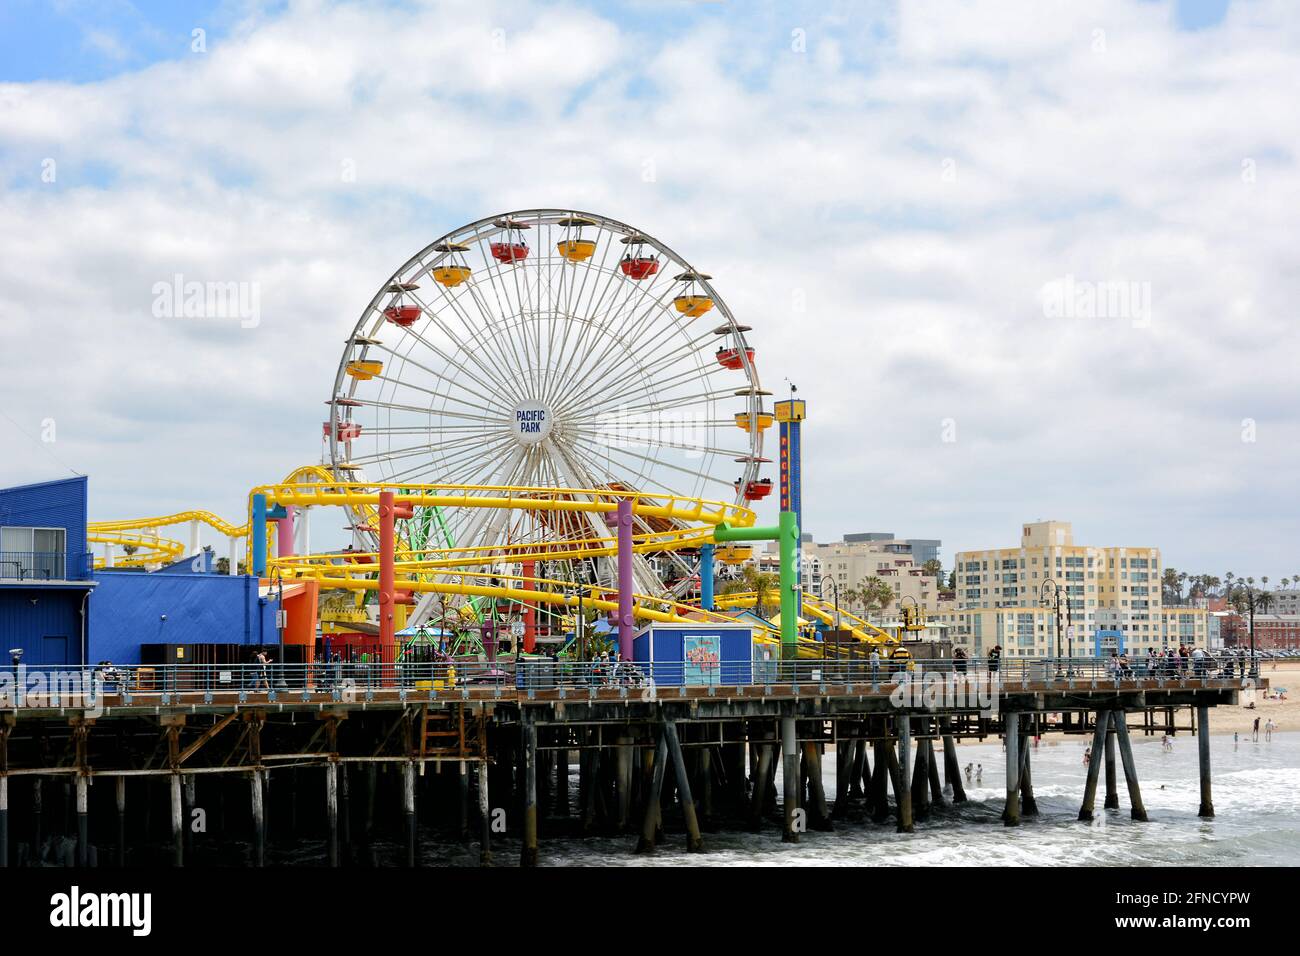 SANTA MONICA, KALIFORNIEN - 15. MAI 2021: Der Pacific Park, ein Vergnügungspark am Santa Monica Pier, blickt direkt auf den Pazifik. Stockfoto